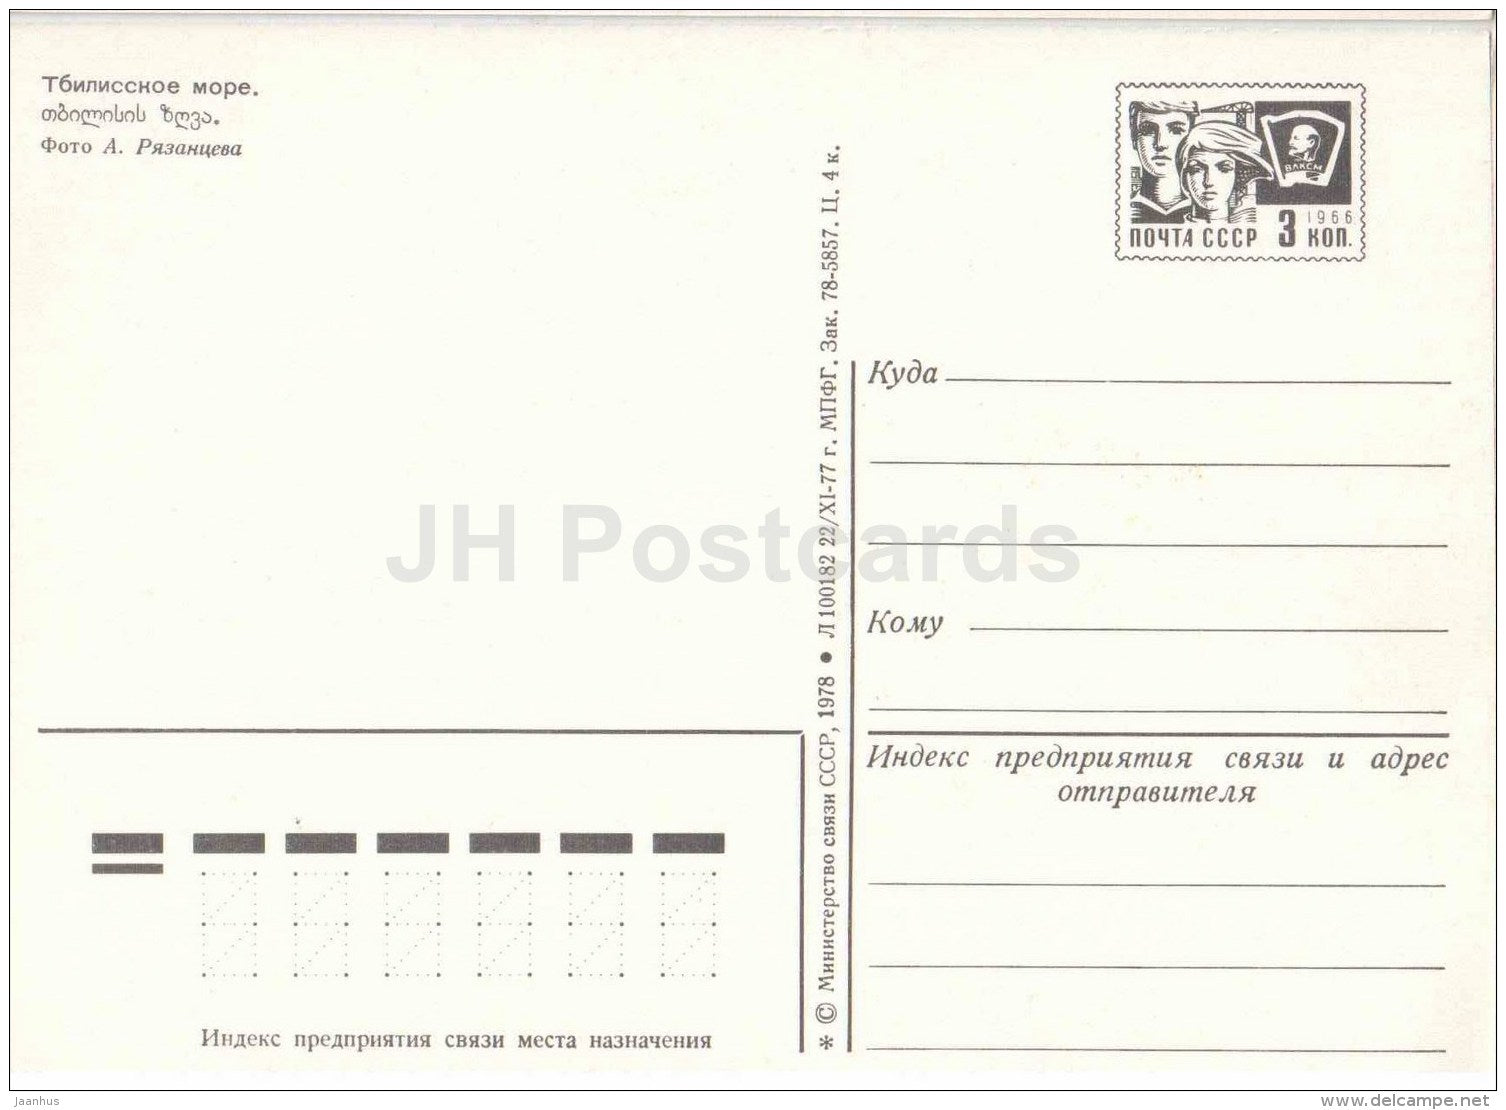 Tbilisi sea - Tbilisi - postal stationery - 1978 - Georgia USSR - unused - JH Postcards